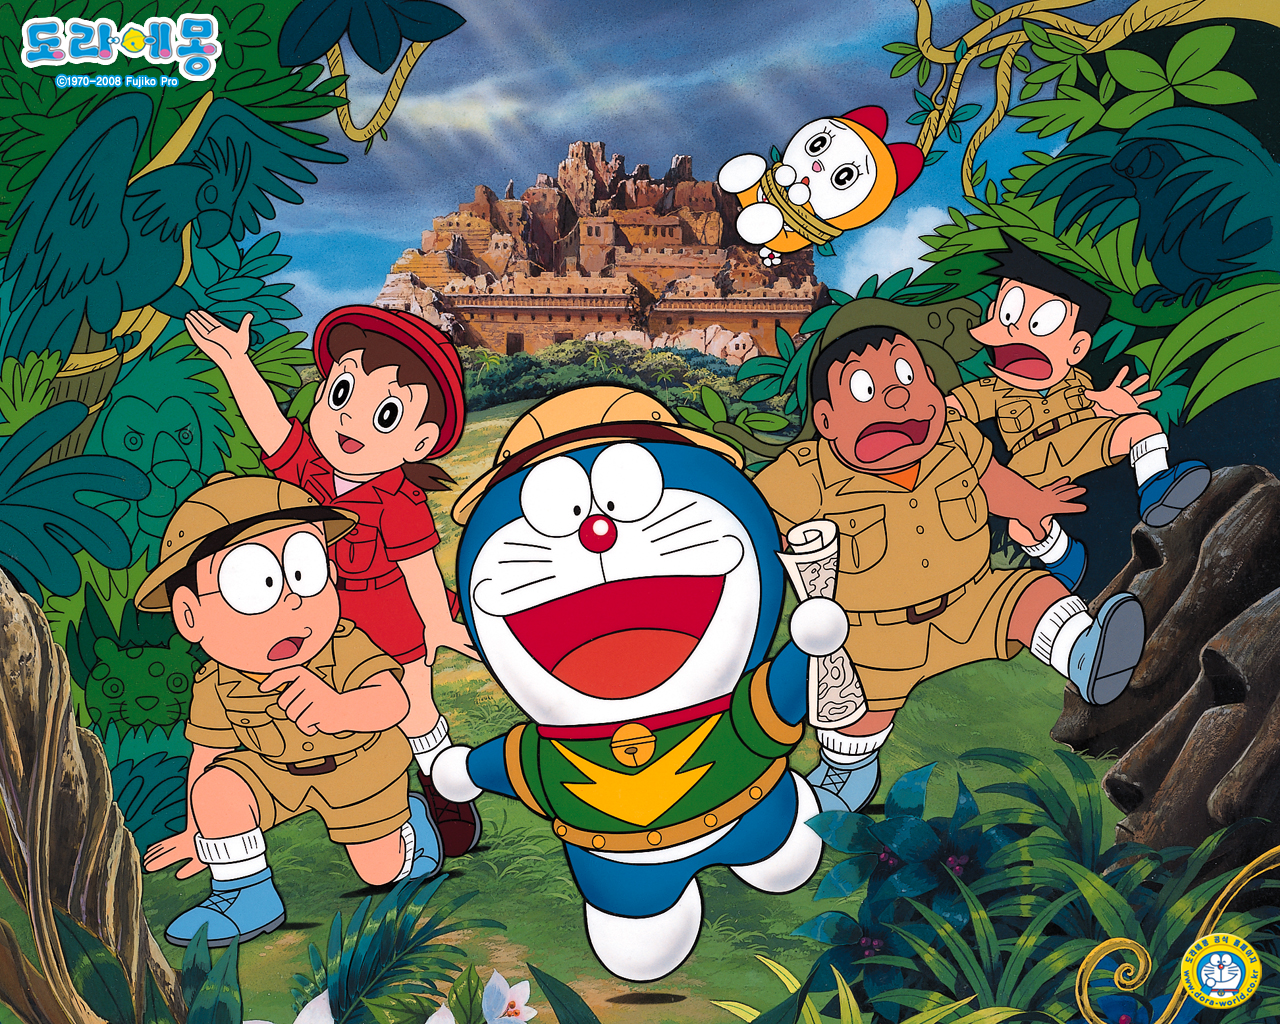 72 Doraemon Pictures: Khám phá ngay bộ sưu tập hình ảnh Doraemon tuyệt đẹp với 72 tùy chọn để lựa chọn! Tận hưởng một thế giới phim hoạt hình tuyệt vời đầy màu sắc và những câu chuyện thú vị với nhân vật tình bạn độc đáo này. Bộ sưu tập tuyệt đẹp sẽ cho bạn nhiều lựa chọn để cập nhật màn hình của mình với những hình ảnh đáng yêu và tuyệt vời!